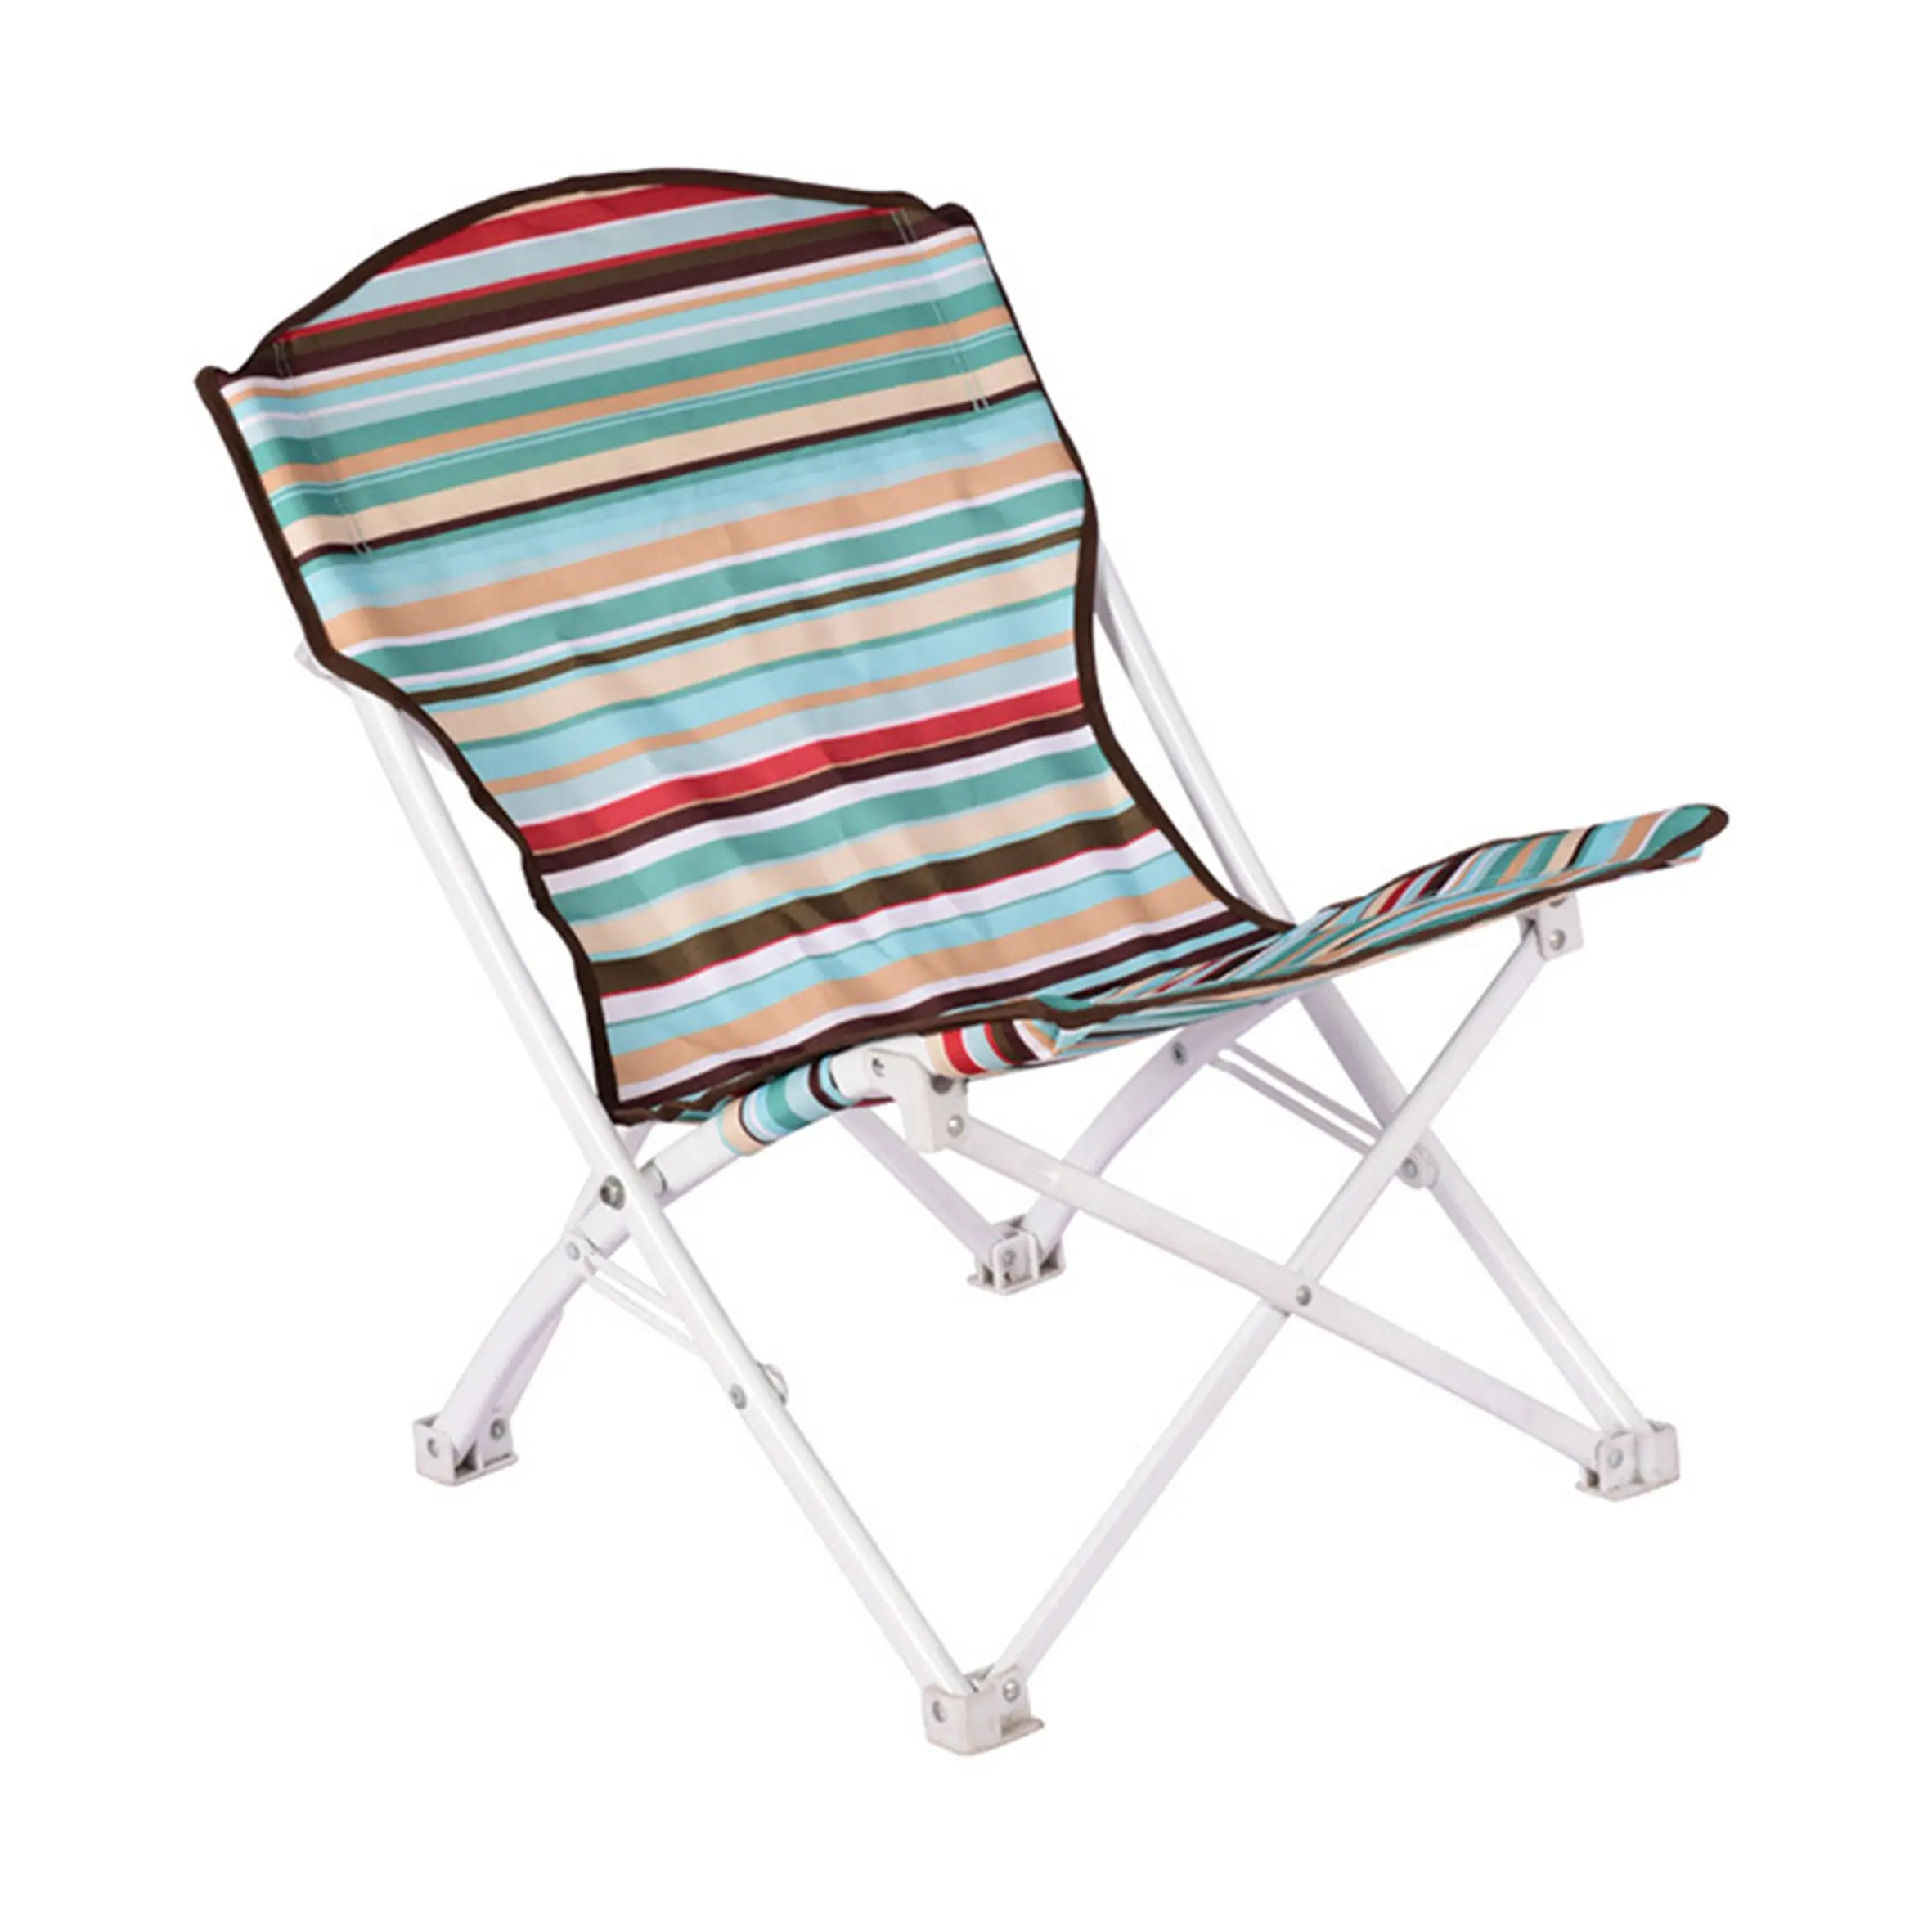 Yüksek kaliteli parti plaj piknik taşınabilir Recliner mobilya, katlanabilir alüminyum katlanır açık yemek çift kamp sandalyeleri/